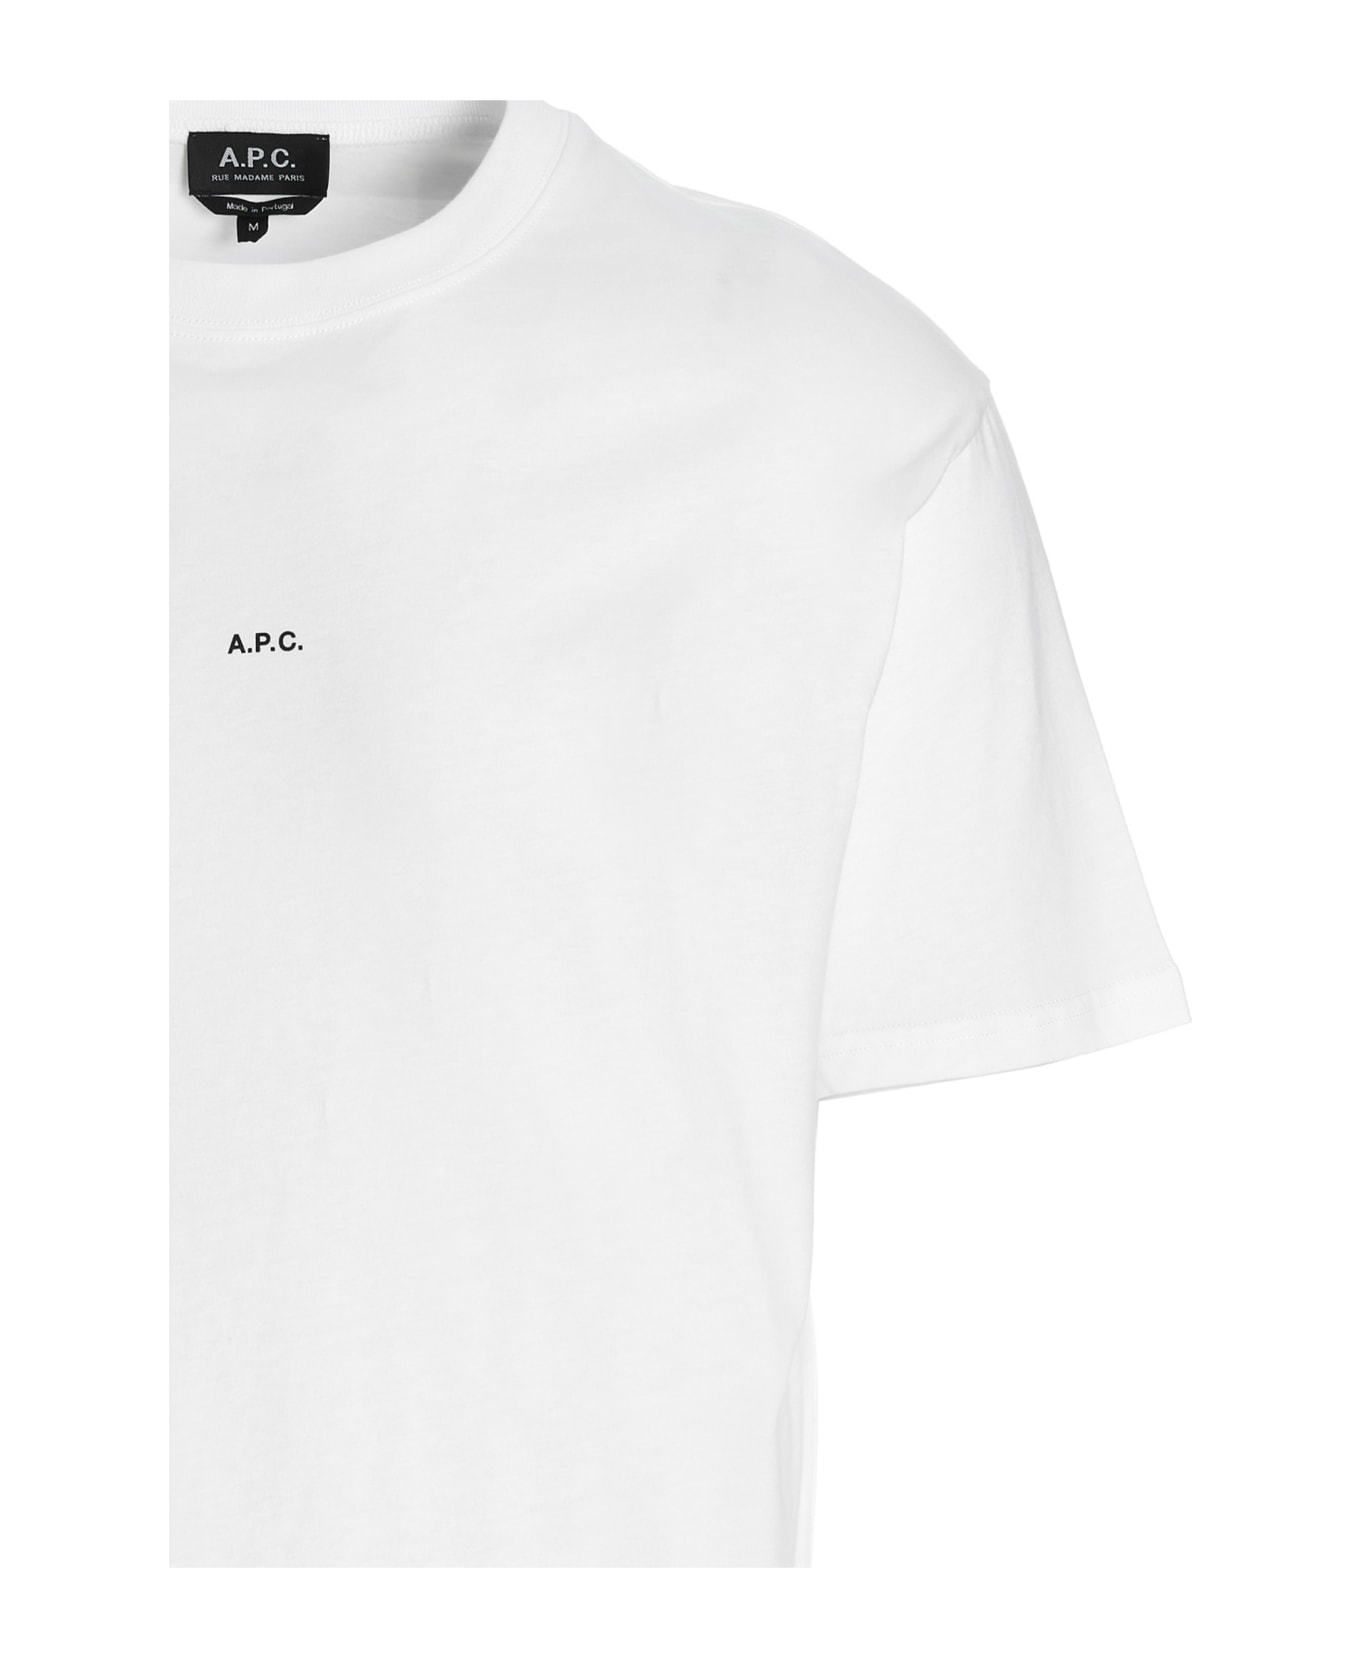 A.P.C. Kyle Cotton Crew-neck T-shirt - White